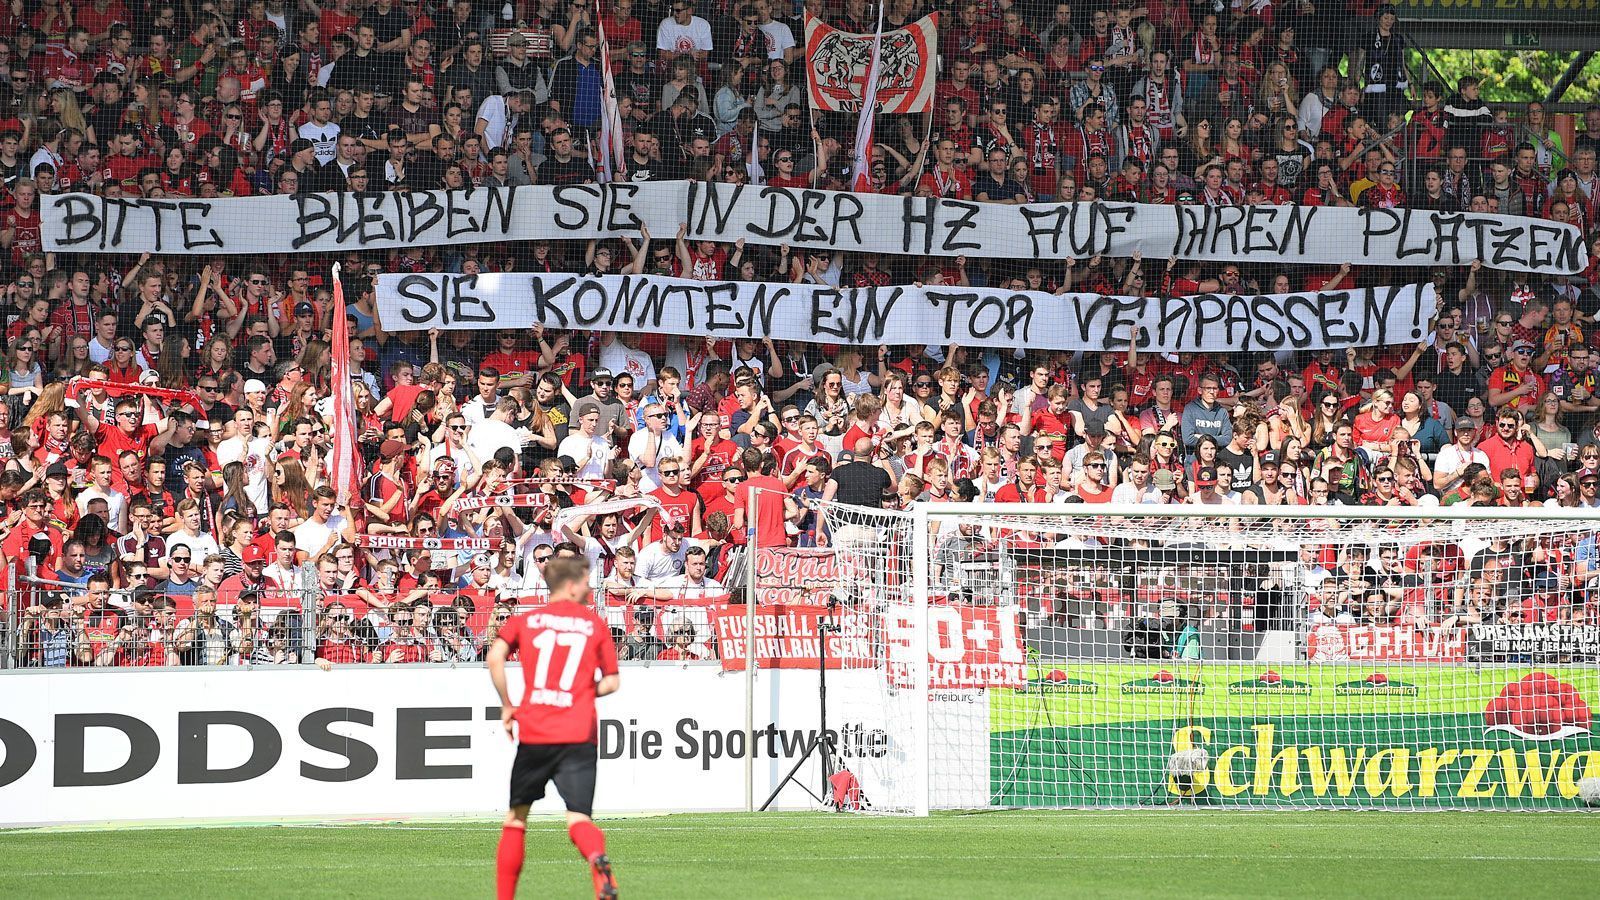 
                <strong>PLATZ 7: Fans des SC Freiburg</strong><br>
                "Bitte bleiben Sie in der Halbzeit auf Ihren Plätzen. Sie könnten ein Tor verpassen!" (Spruchband der Fans des SC Freiburg in Bezug auf den nachträglich via Videobeweis verhängten Halbzeit-Elfmeter beim Spiel in Mainz)
              